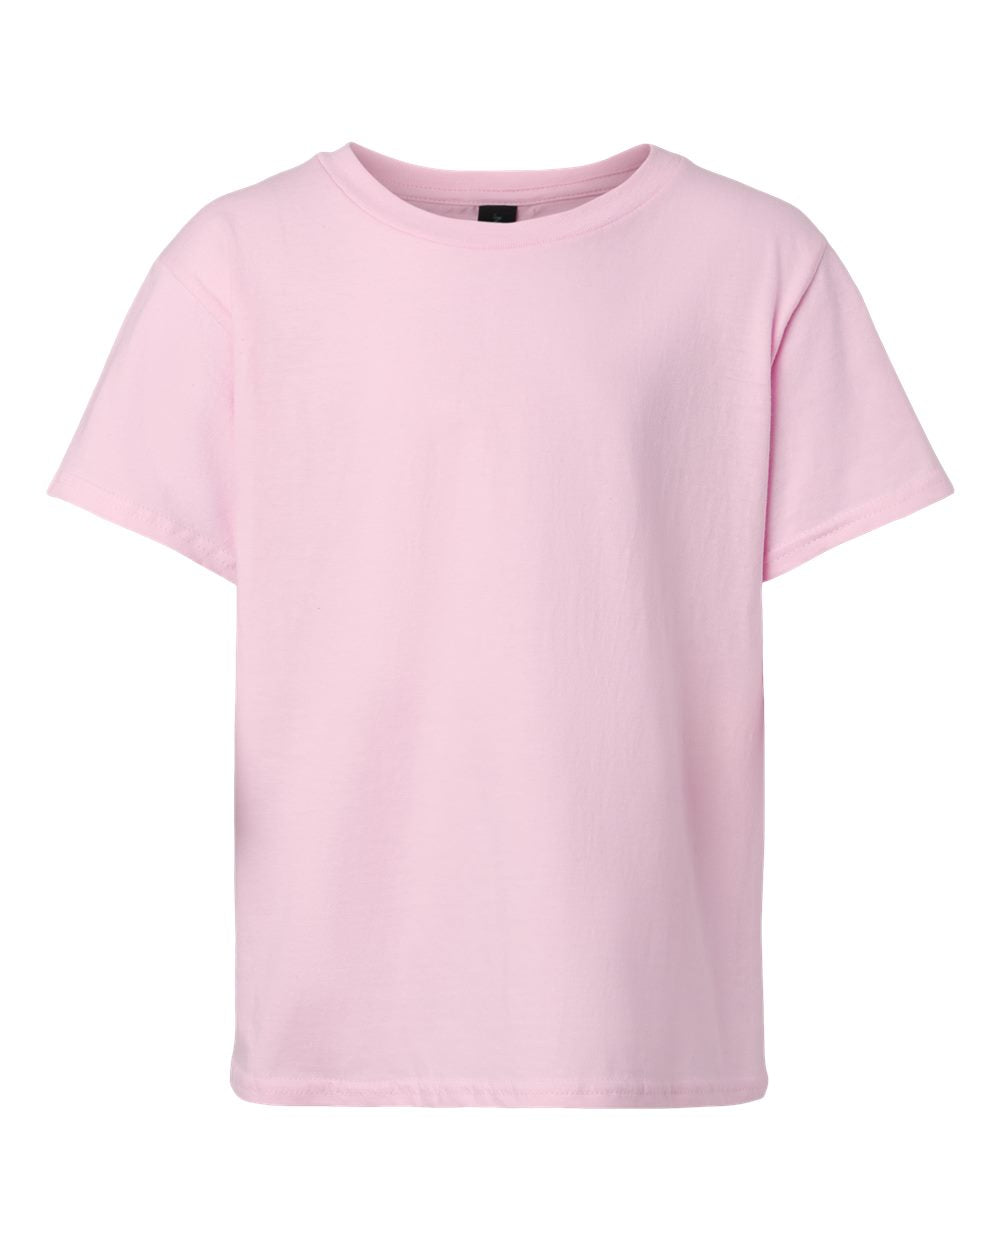 Mini & Mama Pink & Black Puff Matching Shirts